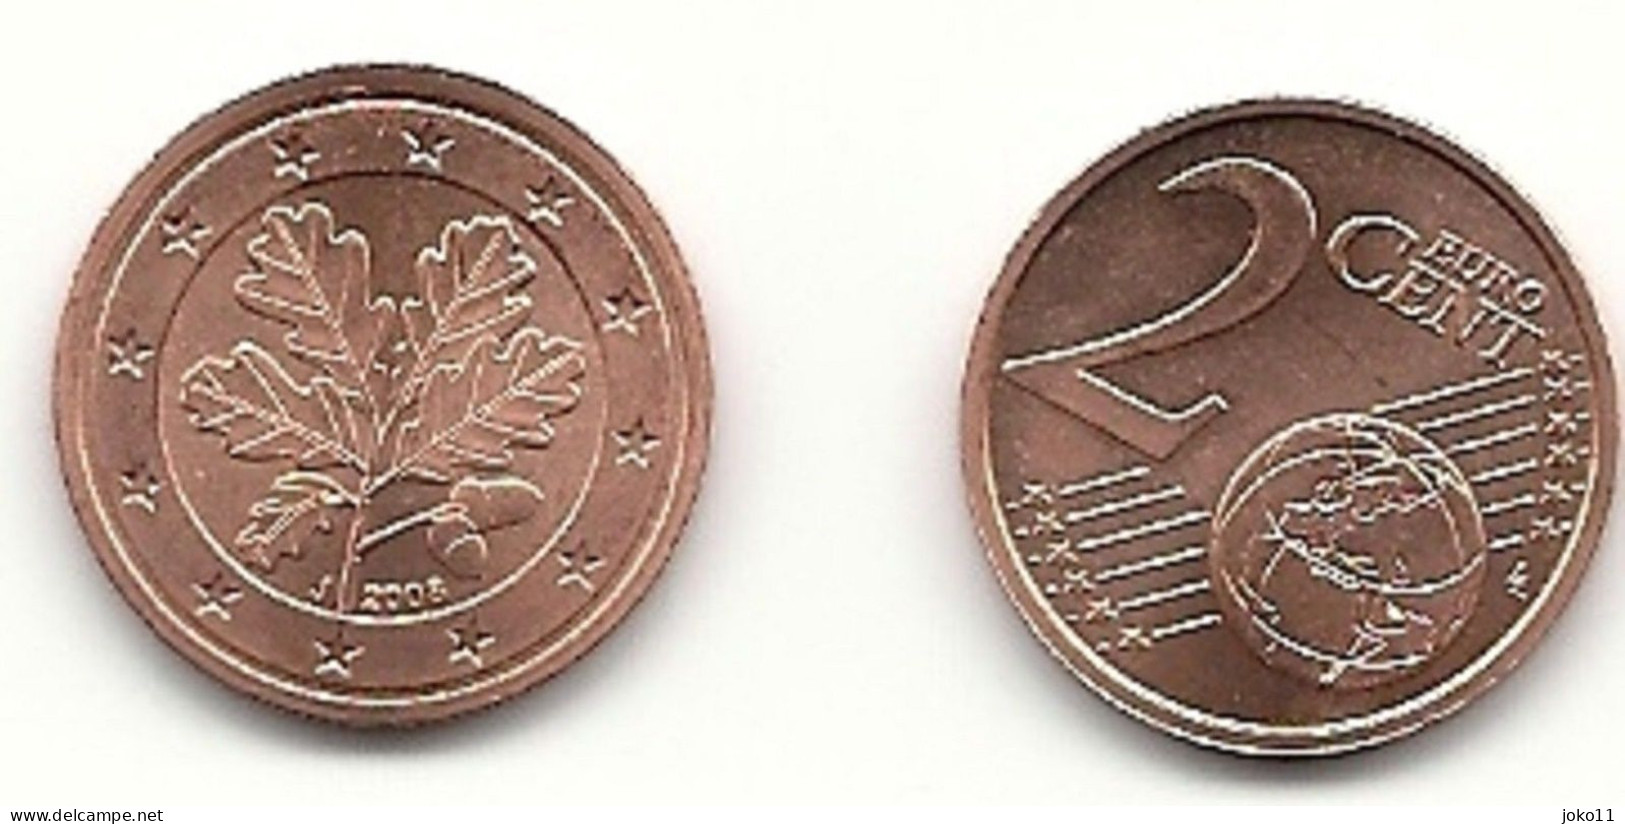 2 Cent, 2008 Prägestätte (J) Vz, Sehr Gut Erhaltene Umlaufmünze - Germany